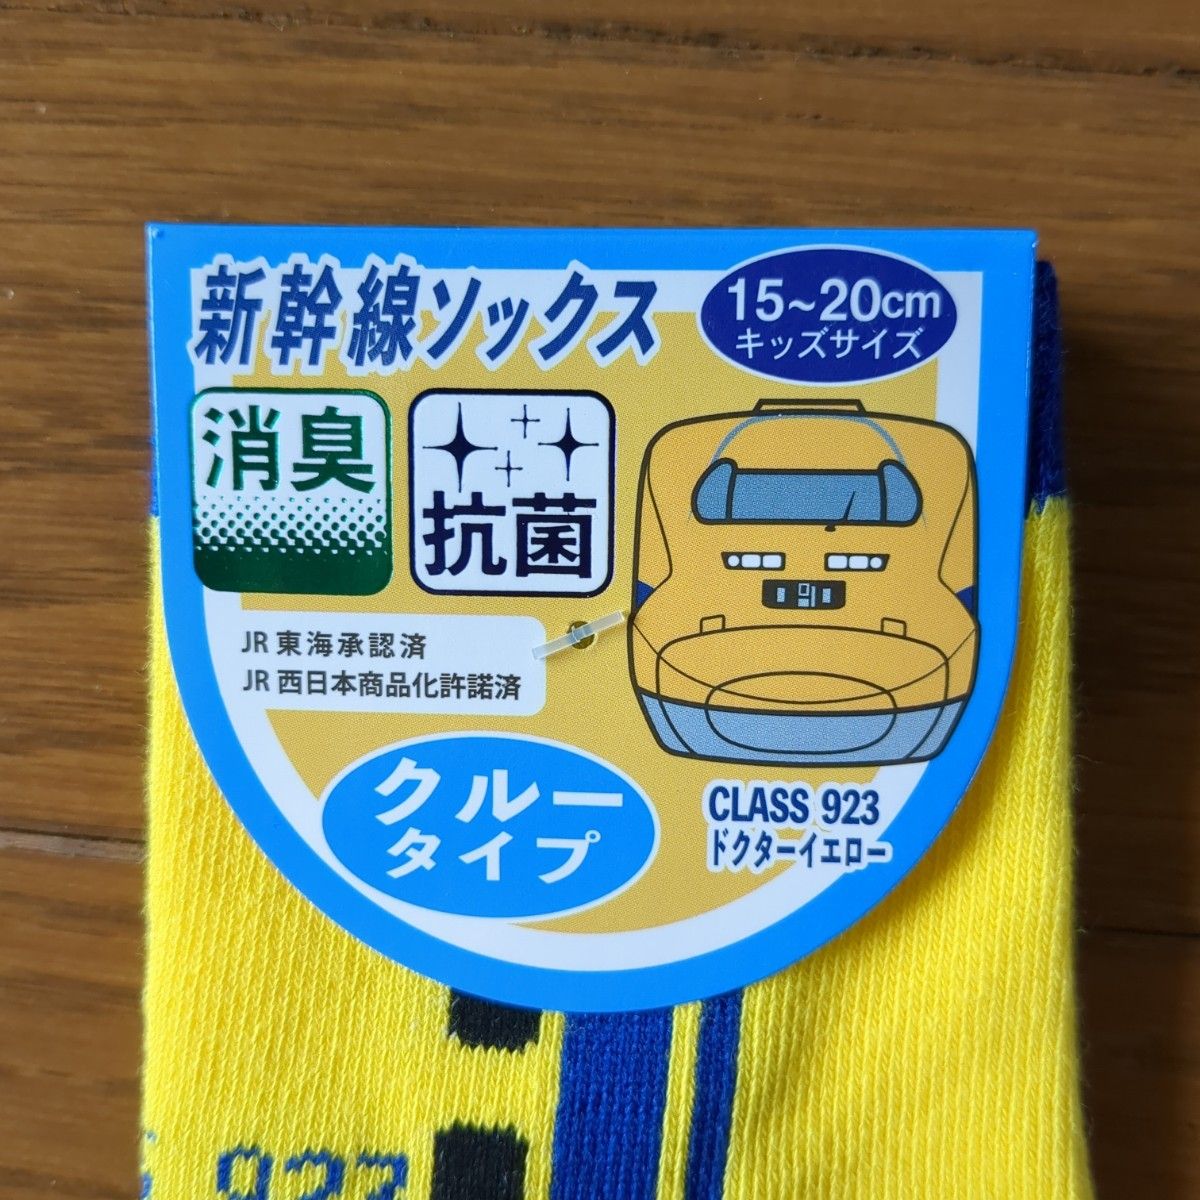 【即購入OK】新幹線ソックス クルーソックス靴下 2足セット 15-20cm 3